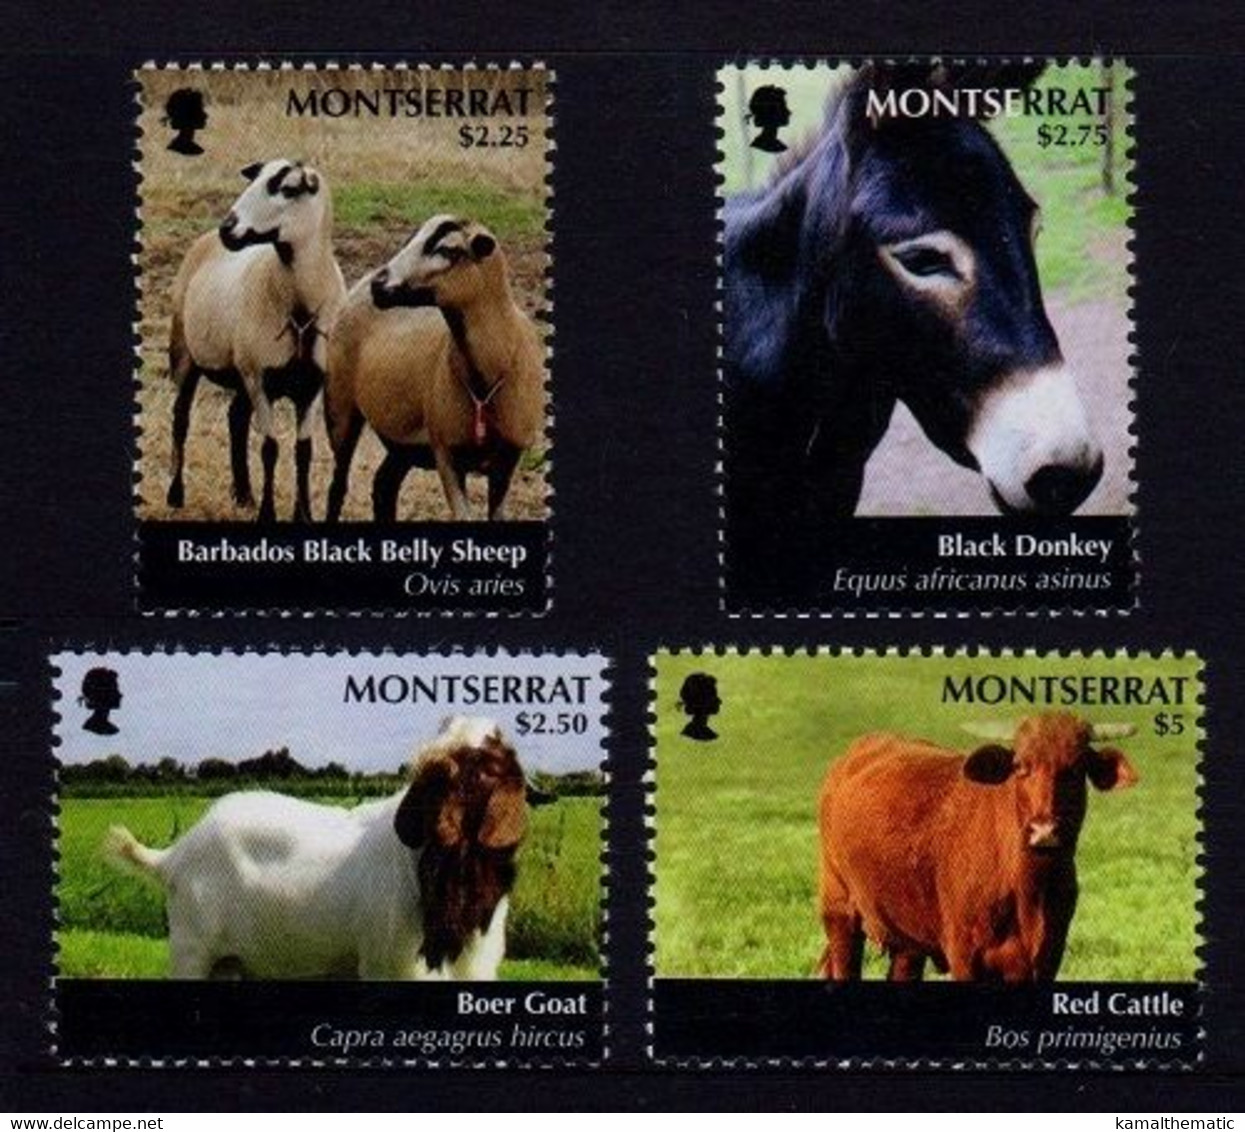 Black Donkey, Barbado Black Belly Sheep, Boer Goat, Montserrat 2011 MNH 4v - Burros Y Asnos